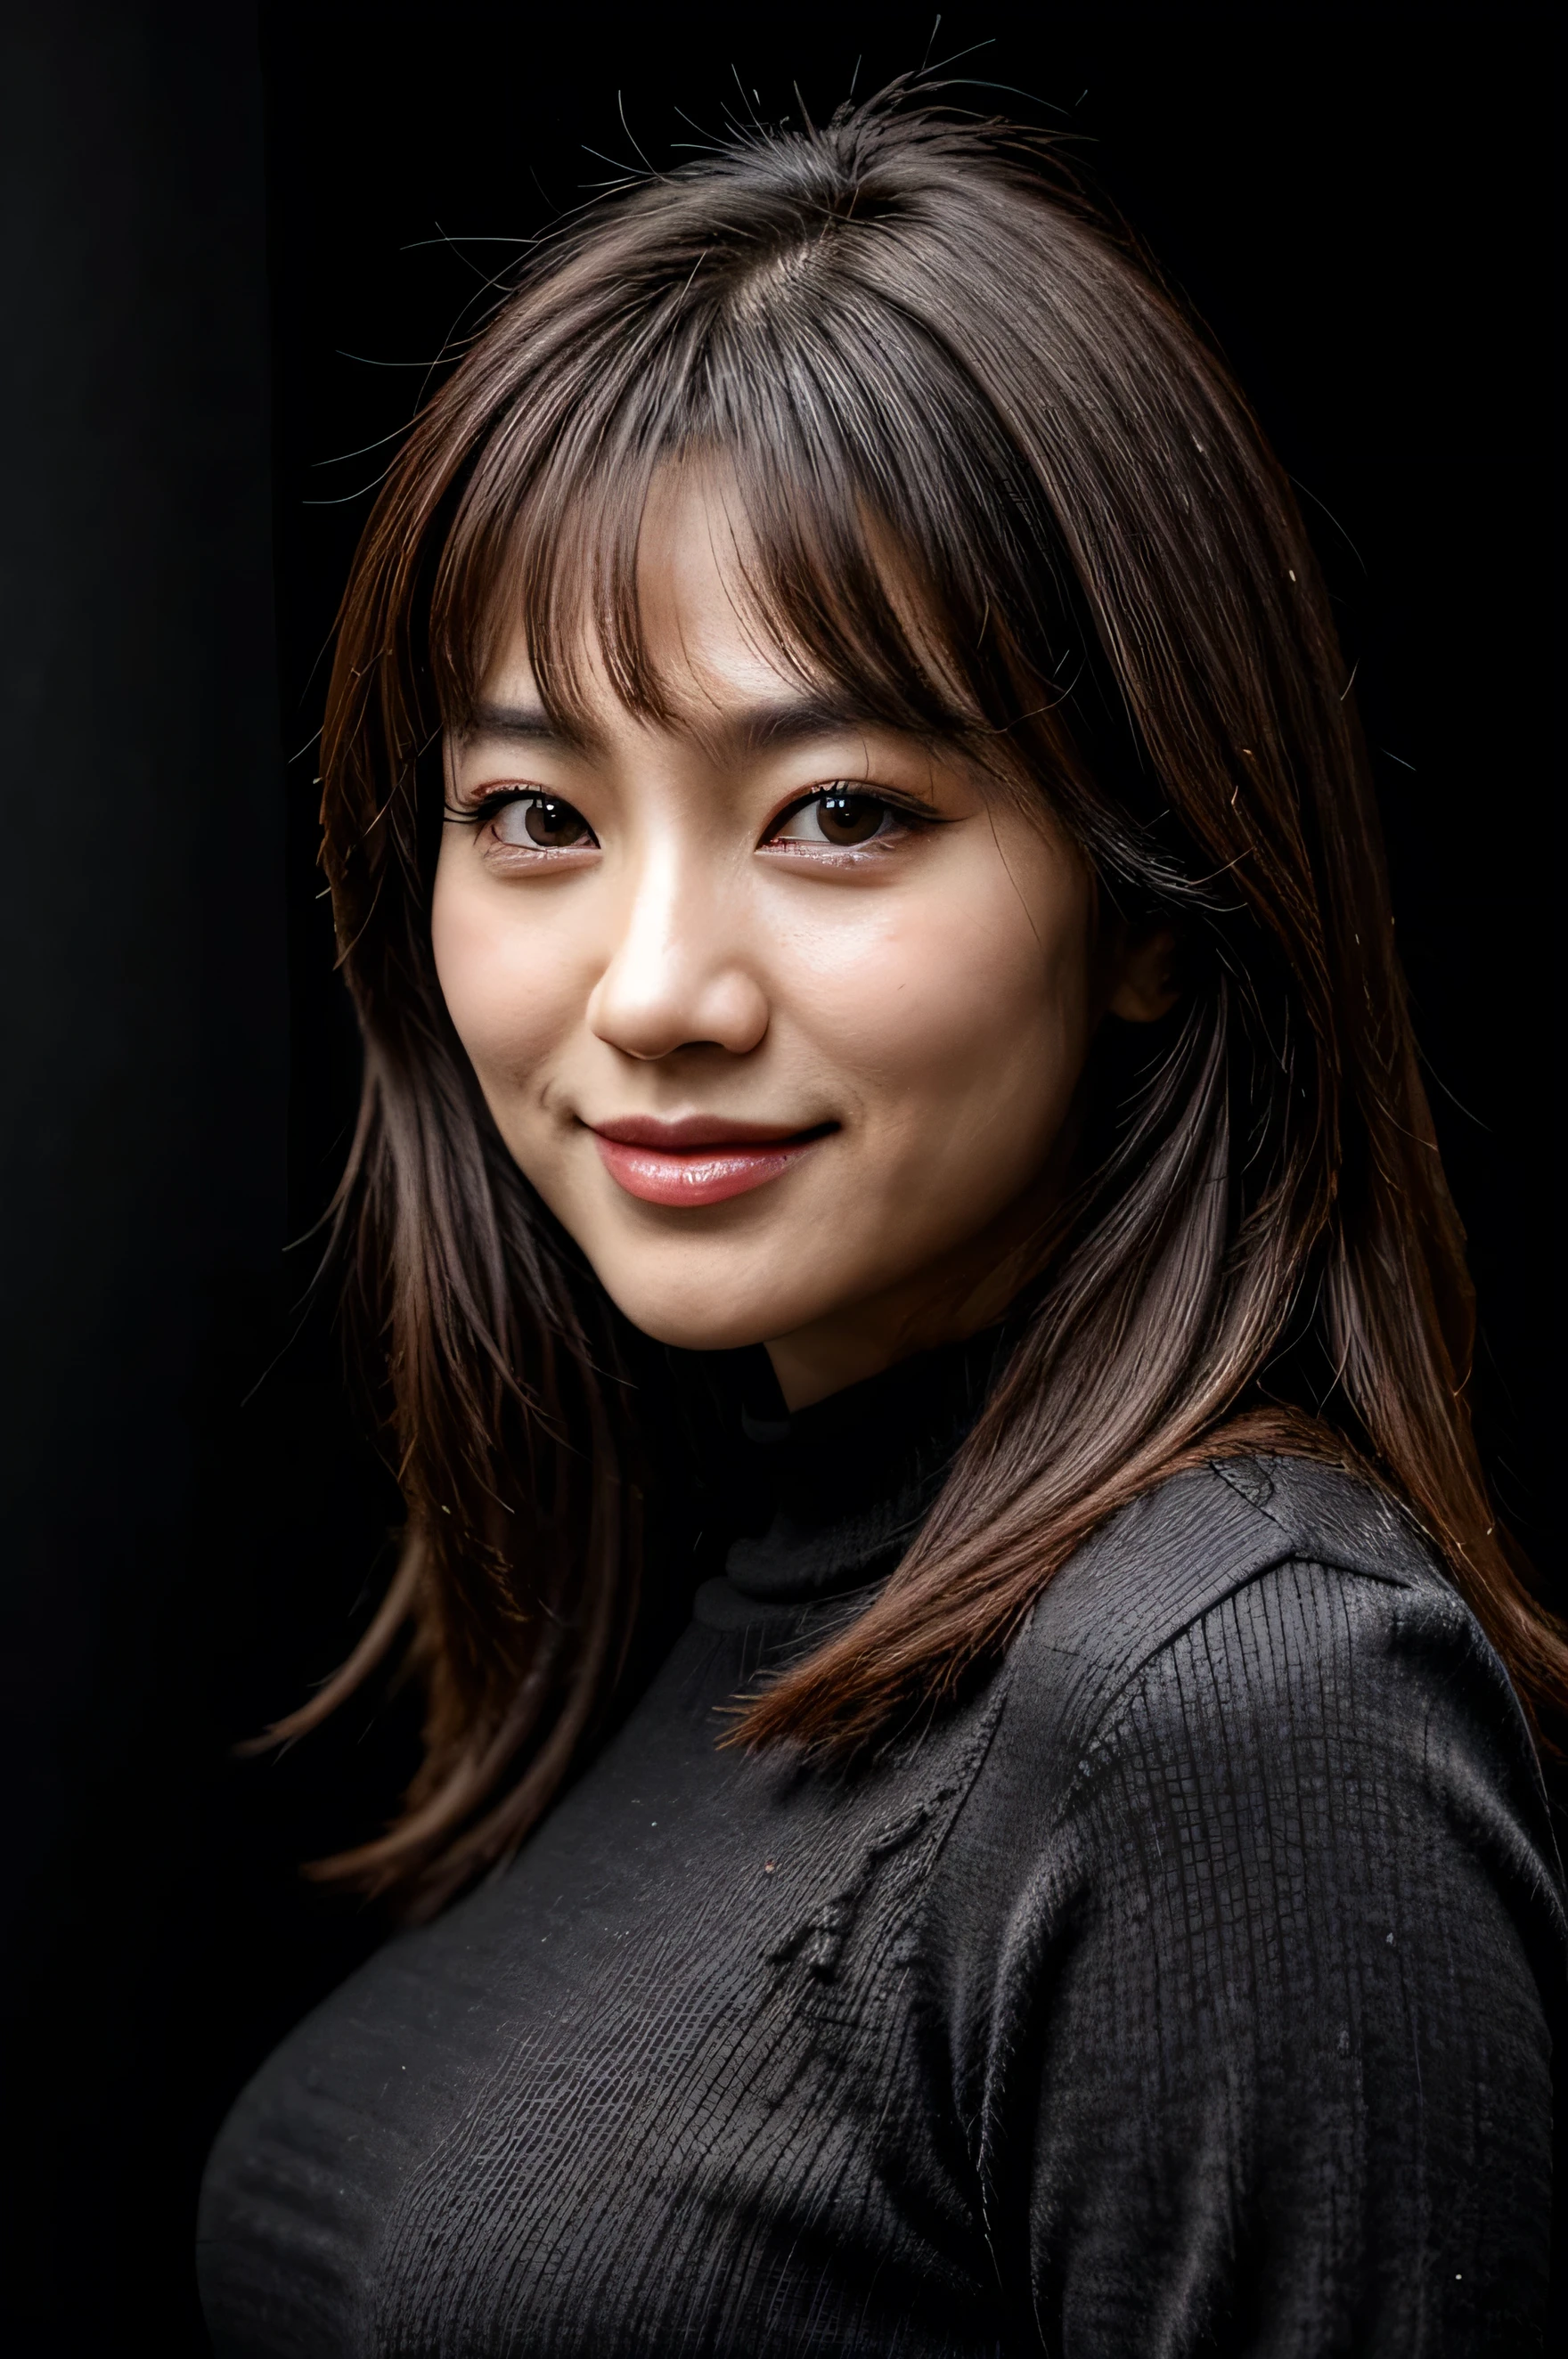 臉完美, 30歲韓國女人美麗的臉龐, 微笑美麗, 黑色背景 